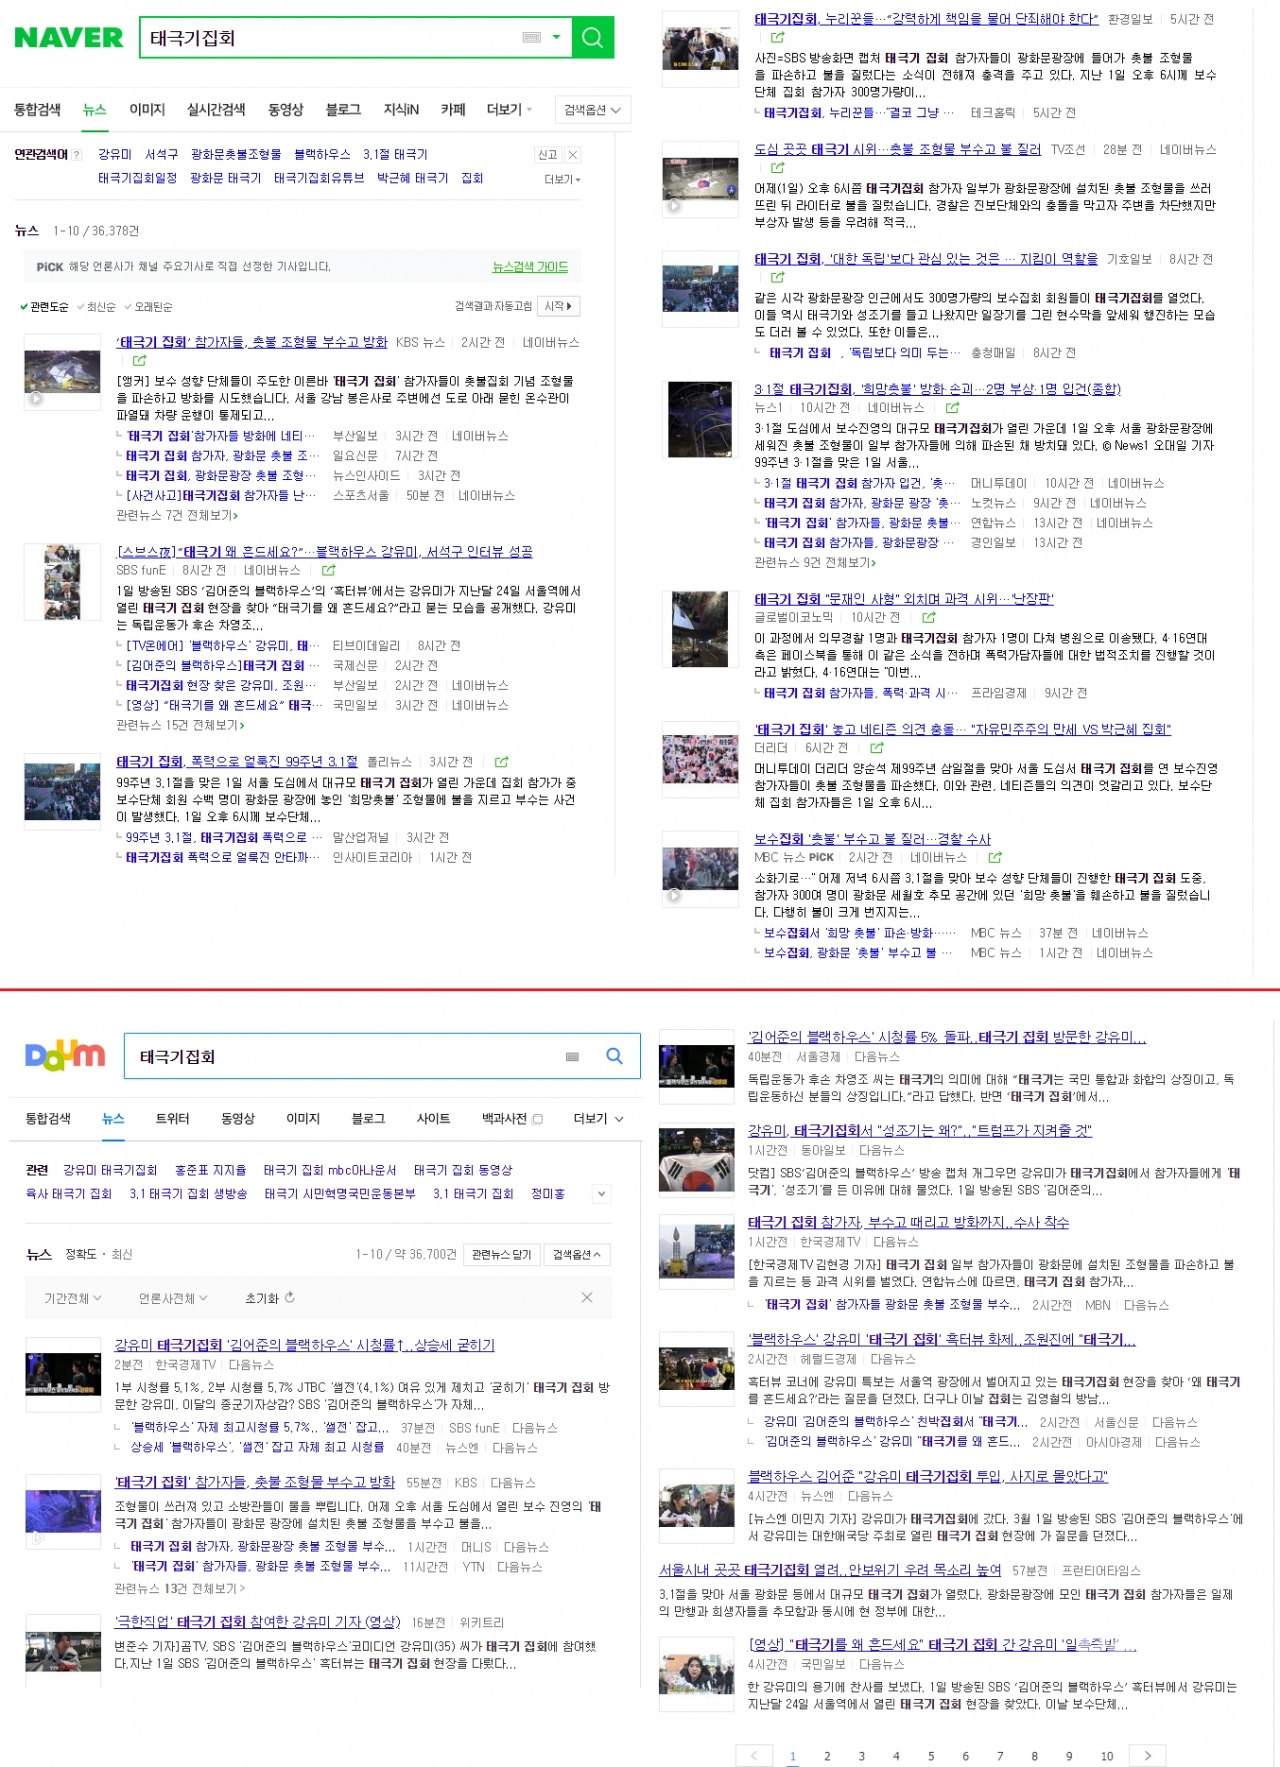 (위쪽) 포털 네이버 '태극기집회' 검색 결과(아래쪽) 포털 다음 '태극기집회' 검색 결과